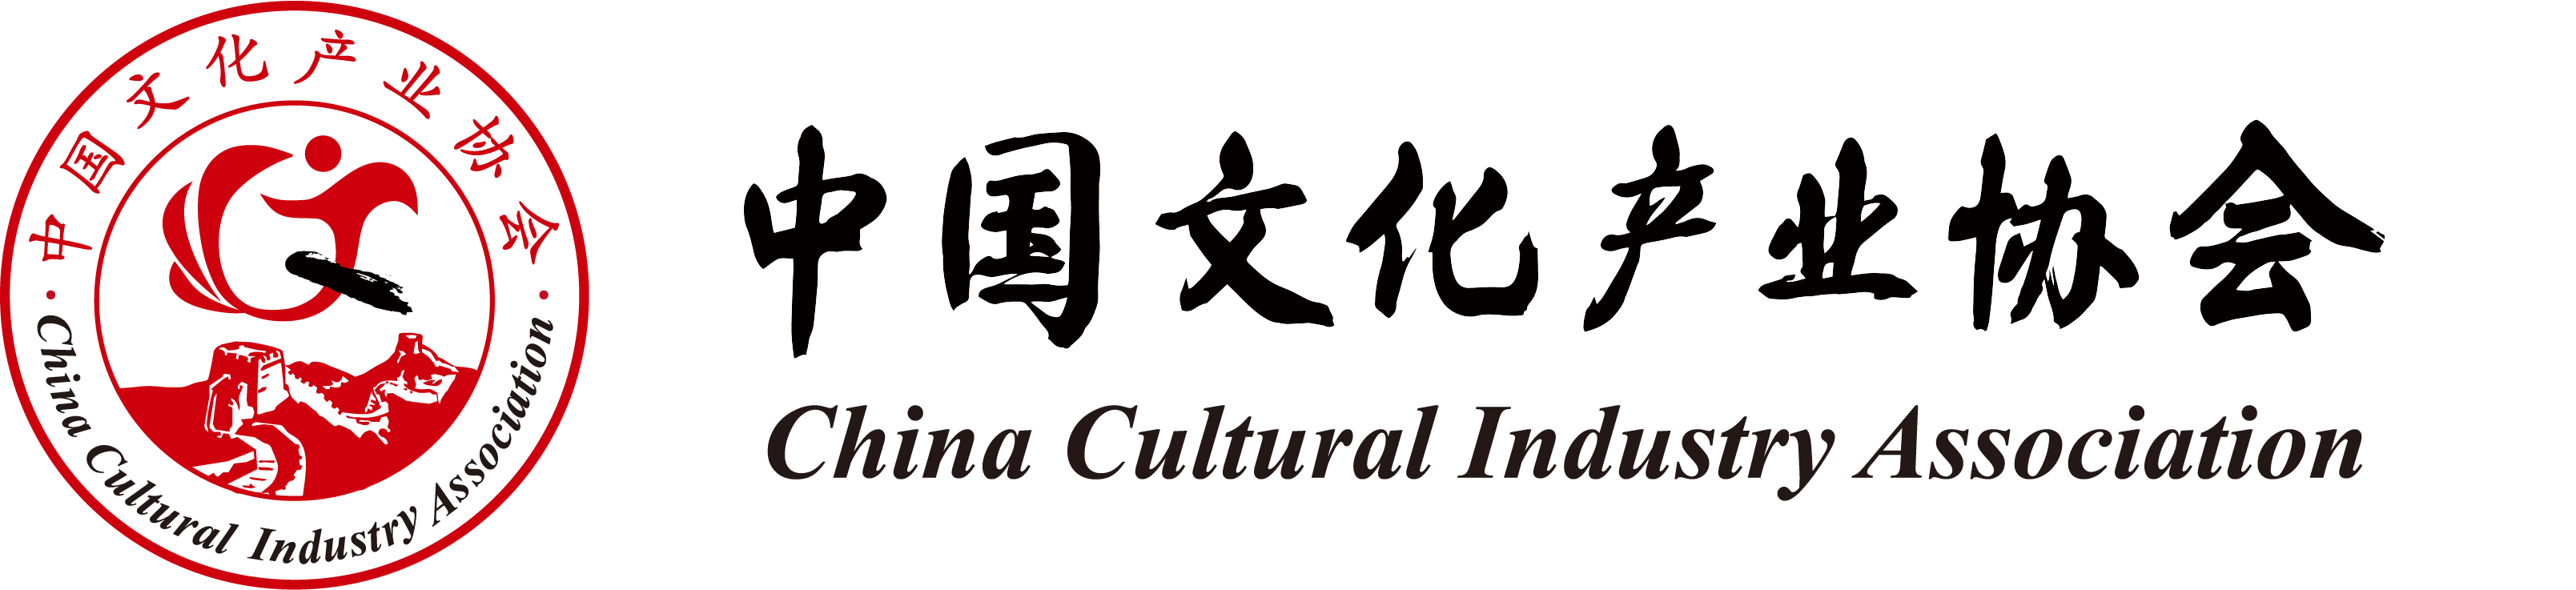 文化 共和国 中華 人民 中華人民共和国文化部